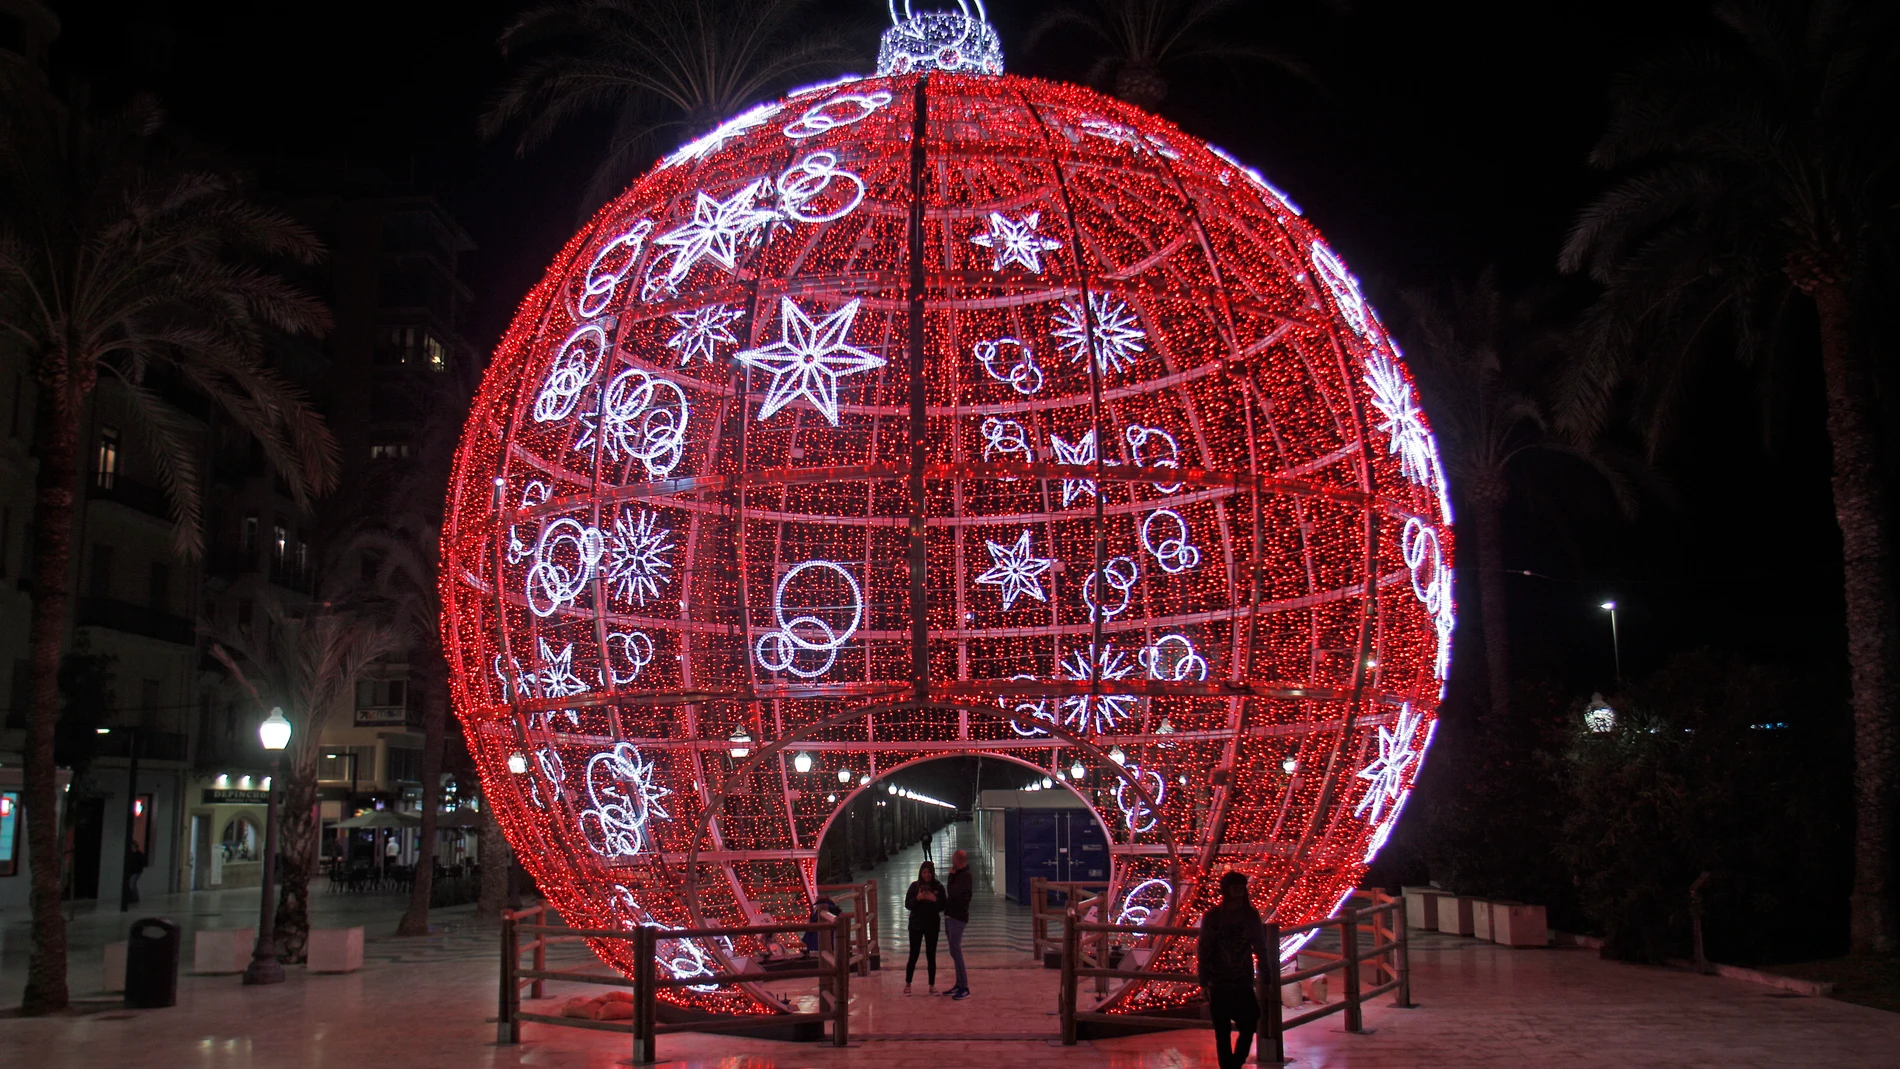 Las capitales de la Comunitat Valenciana (en la imagen, Alicante) apuestan por la eficiencia energética y el ahorro en la iluminación navideña de este año con horarios limitados de encendido y tecnología led, y por novedades como proyectores de vídeo o una bola gigante transitable.